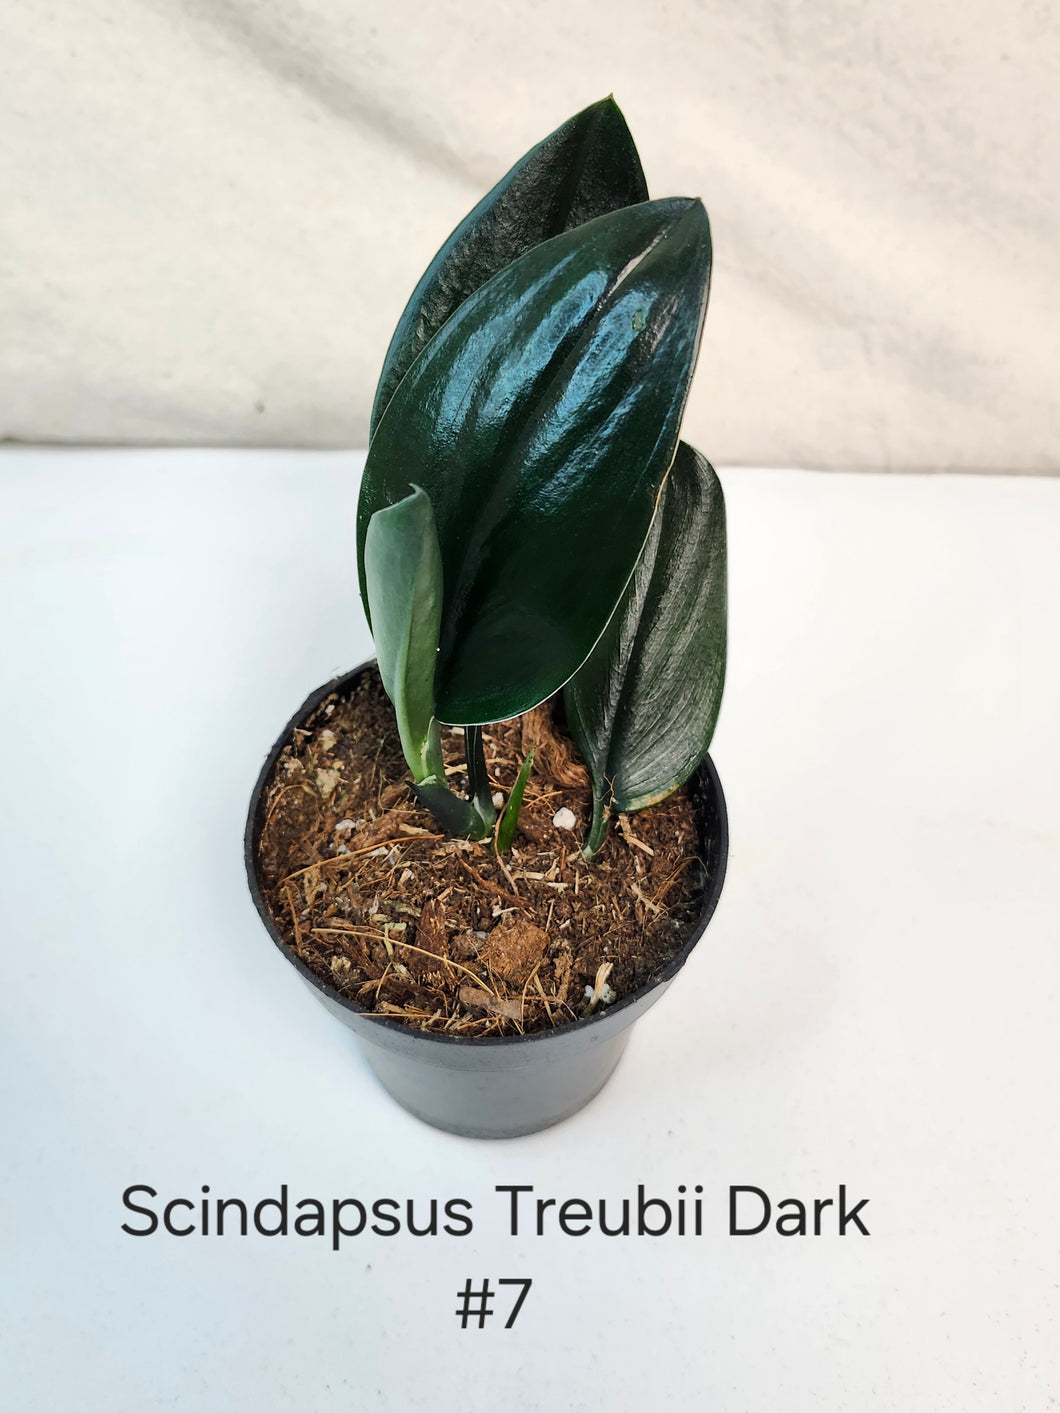 Scindapsus Treubii Dark Form #7